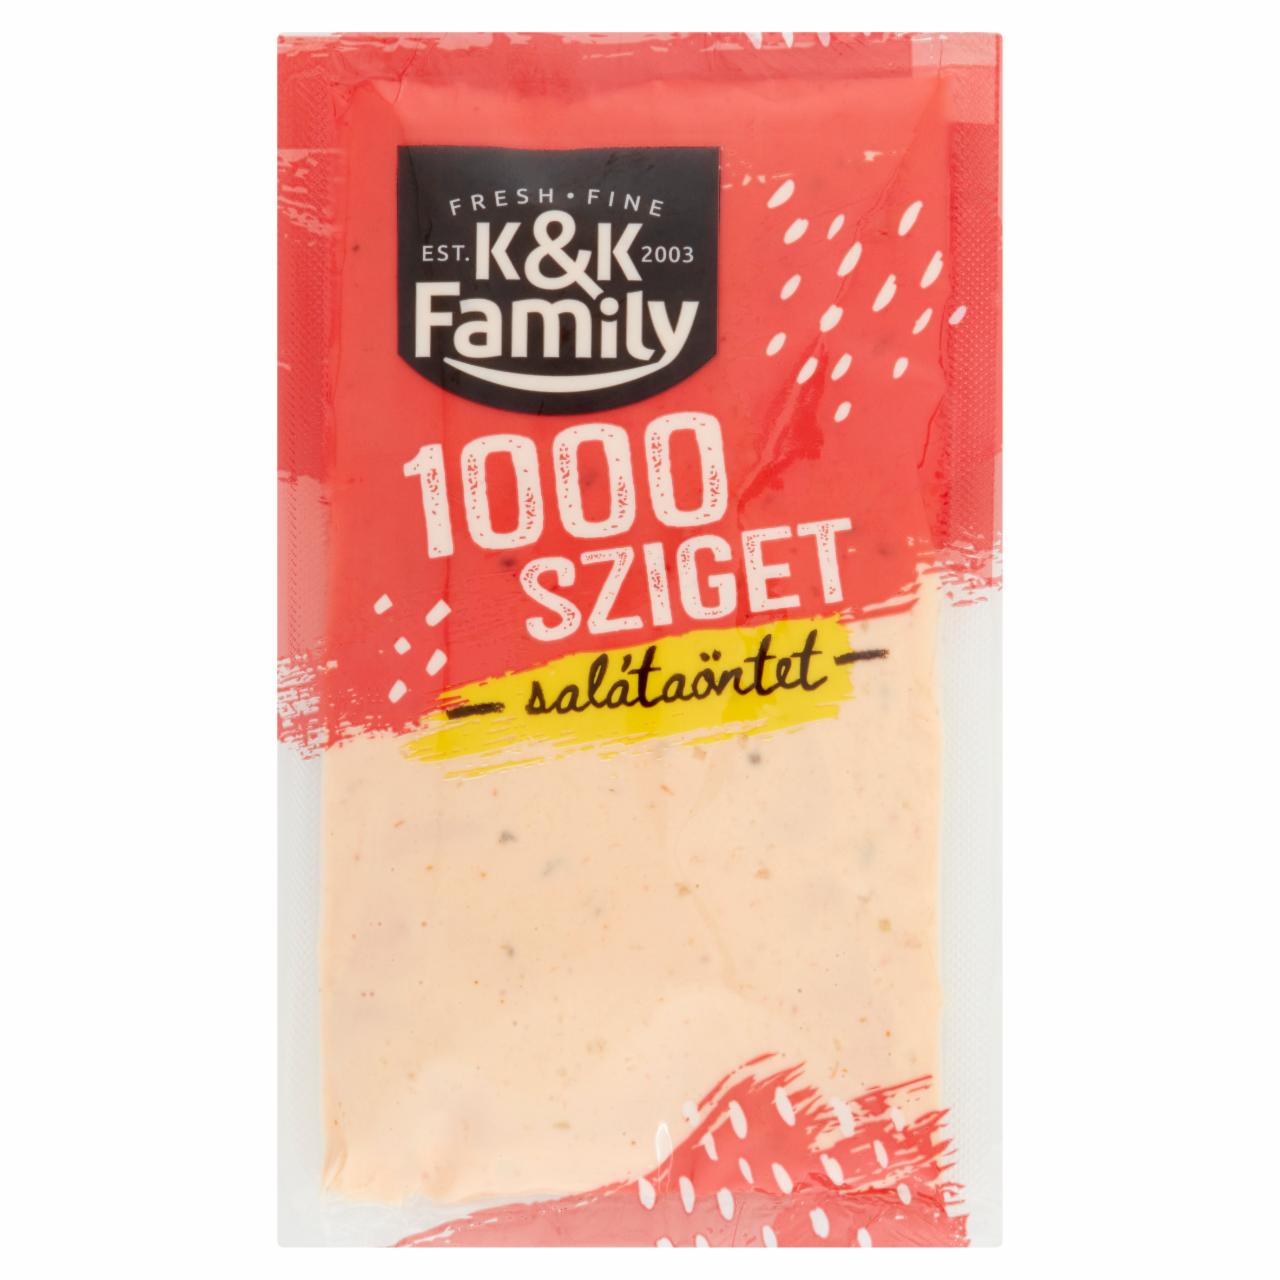 Képek - Family 1000 sziget salátaöntet 50 g